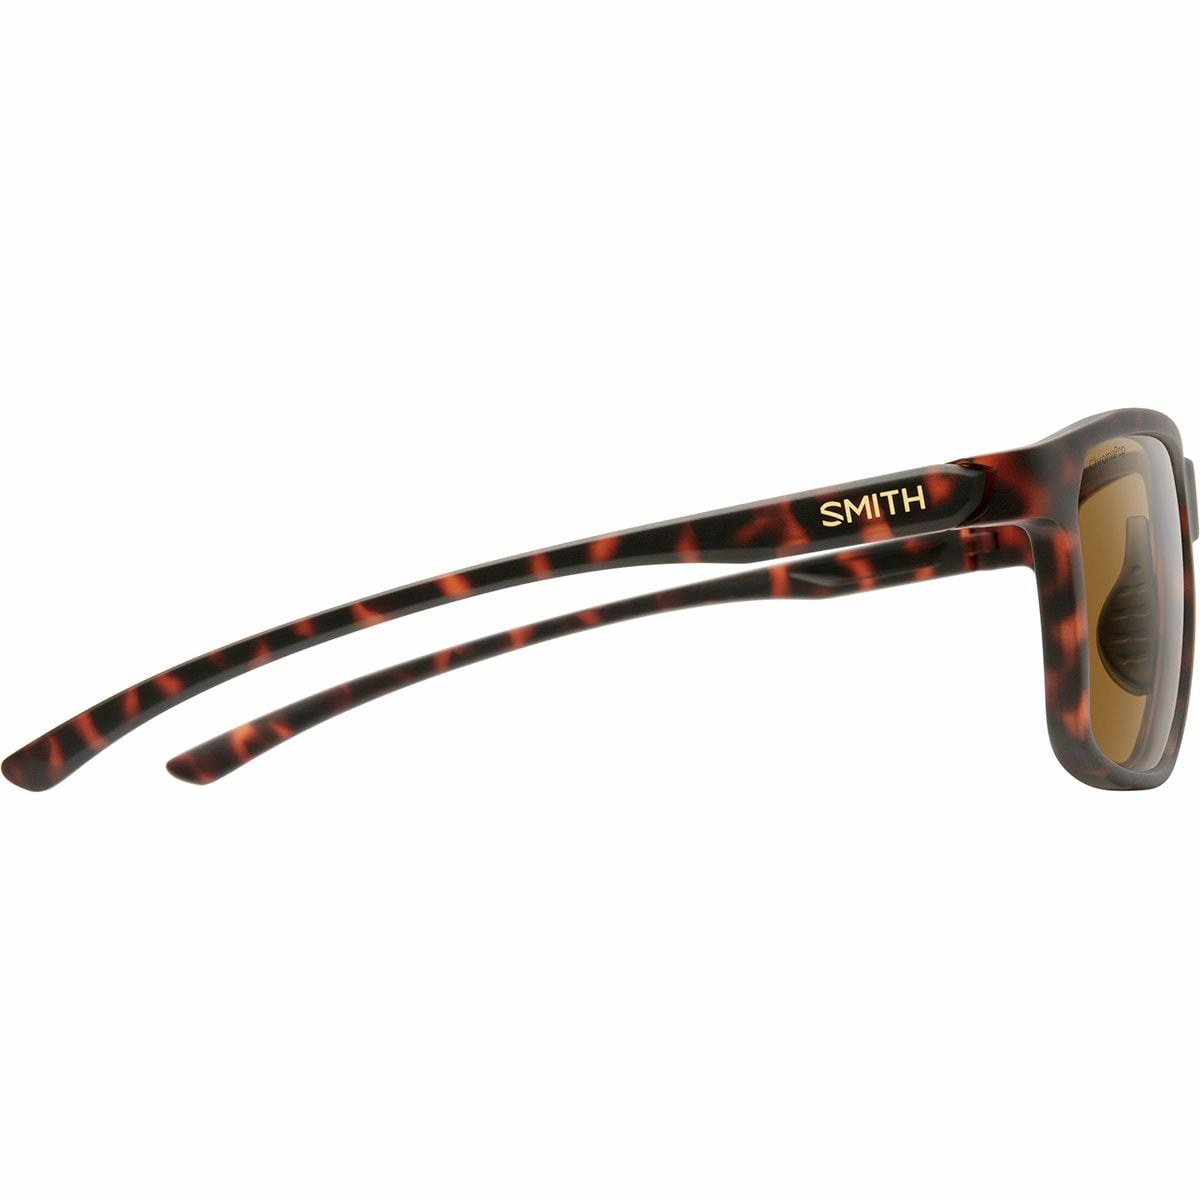 半額SALE☆半額SALE☆(取寄) スミス ピンポイント クロマポップ ポーラライズド サングラス Smith Pinpoint ChromaPop  Polarized Sunglasses Matte Tortoise Chormapop Polarized Brown  スポーツウェア・アクセサリー